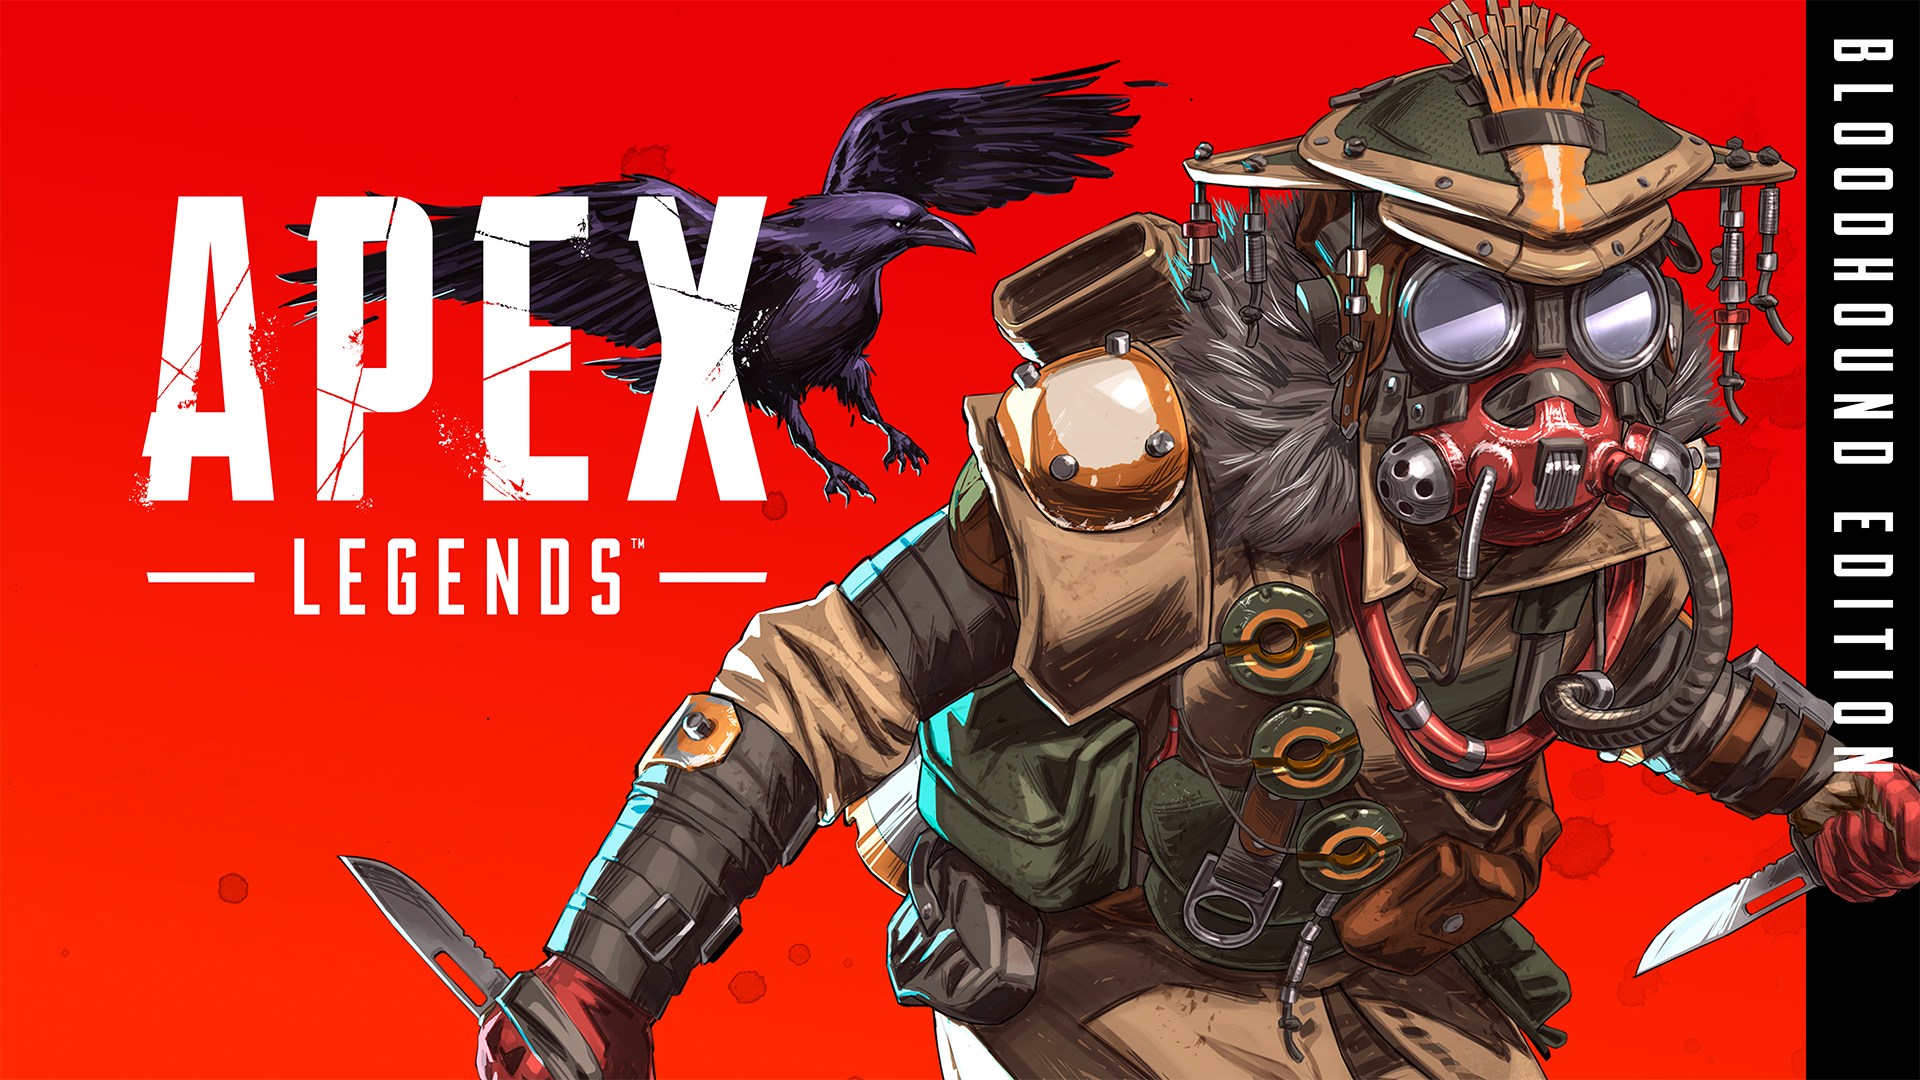 Apex Legends - Edição Bloodhound